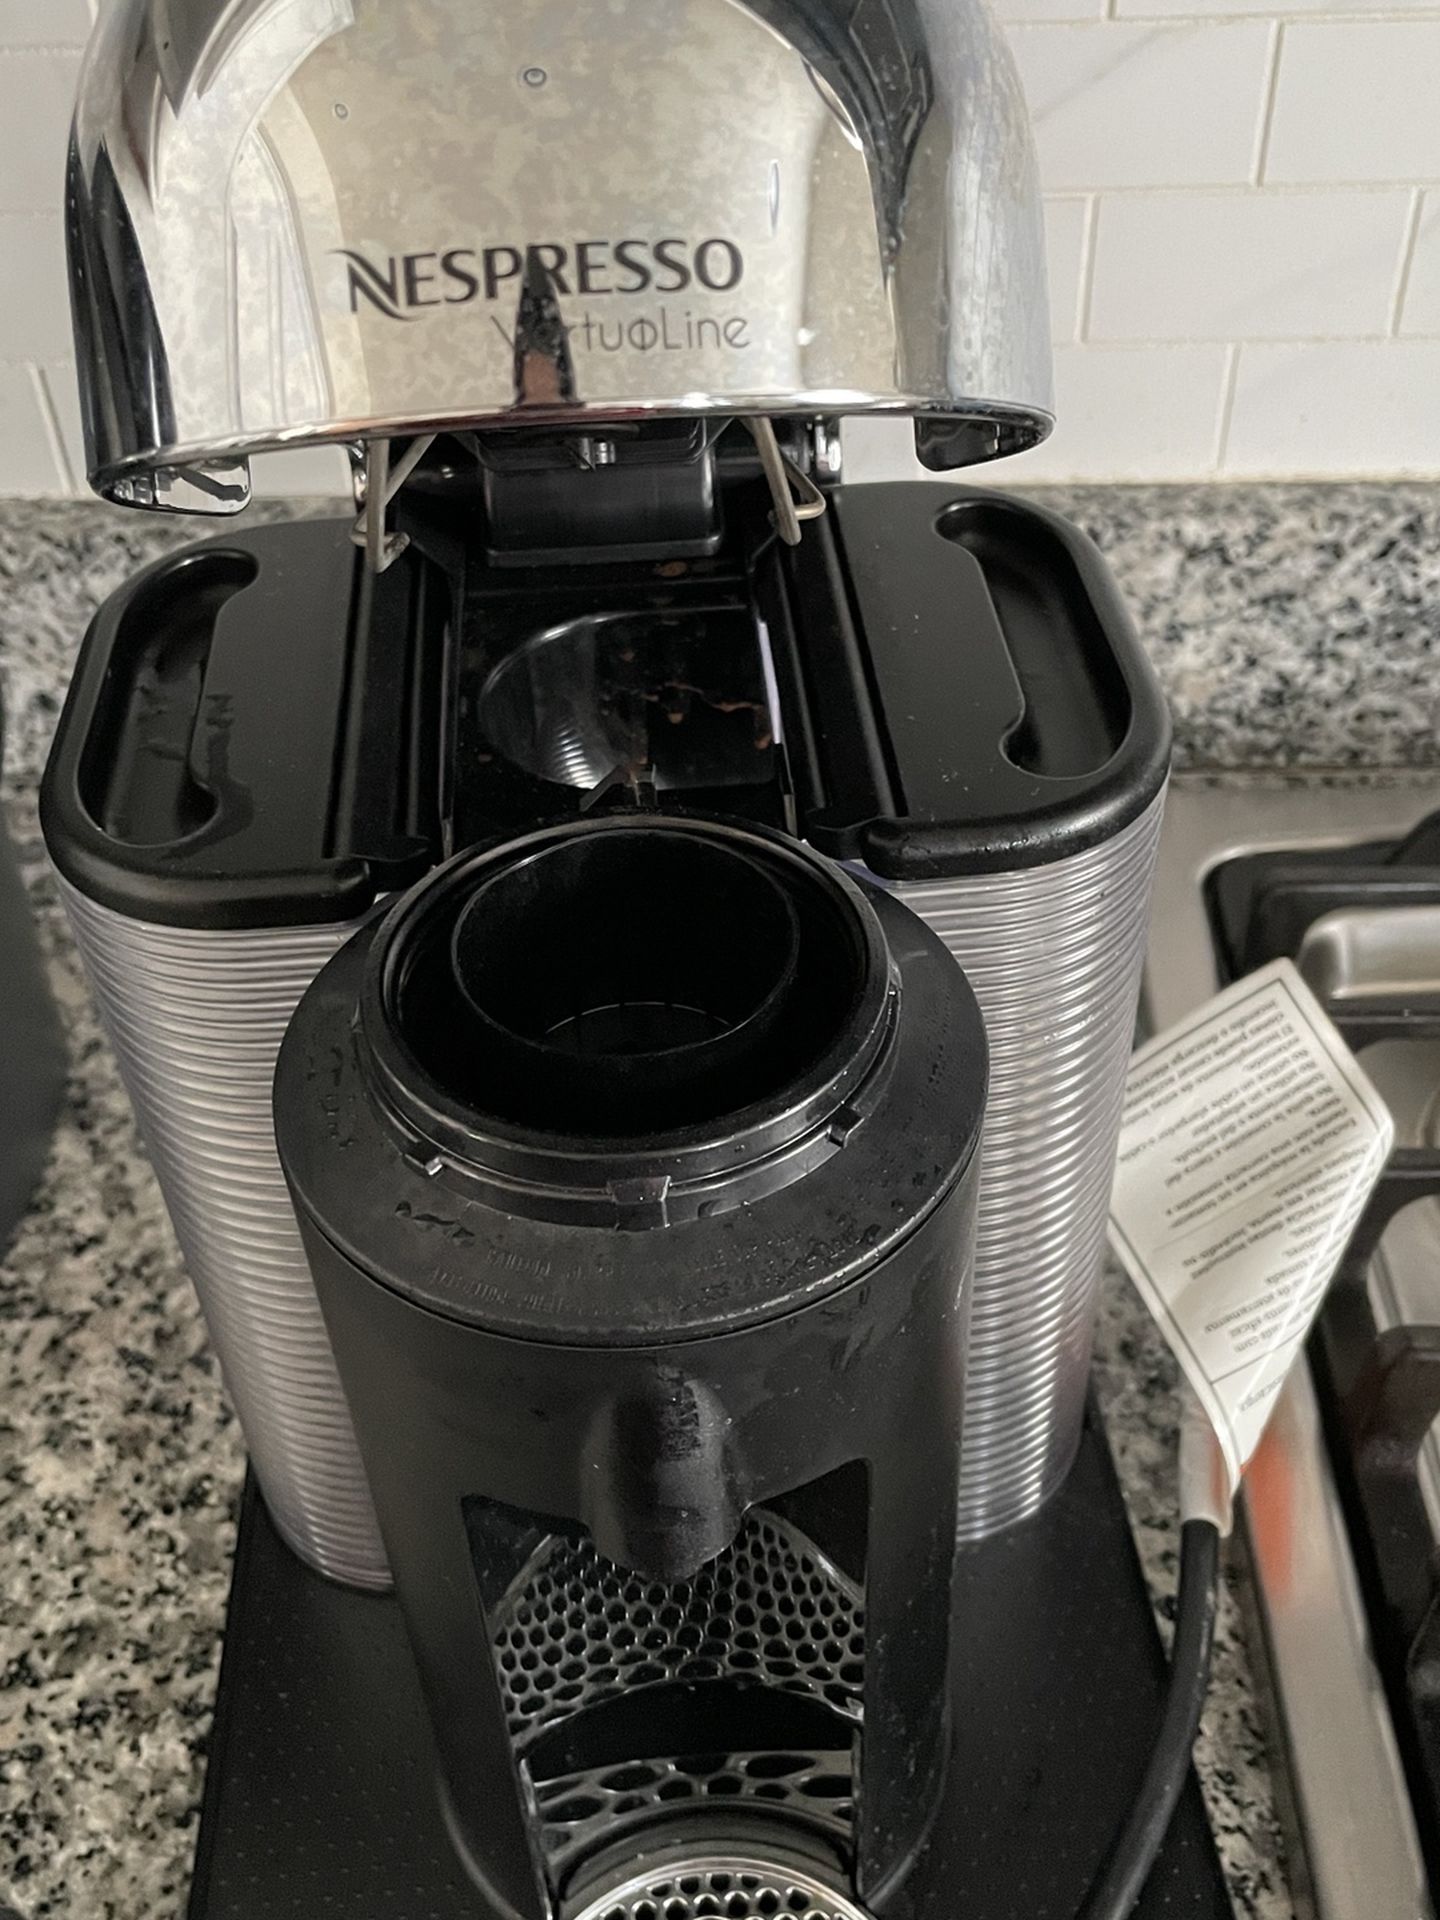 Nespresso VertuoLine Coffee And Espresso Maker